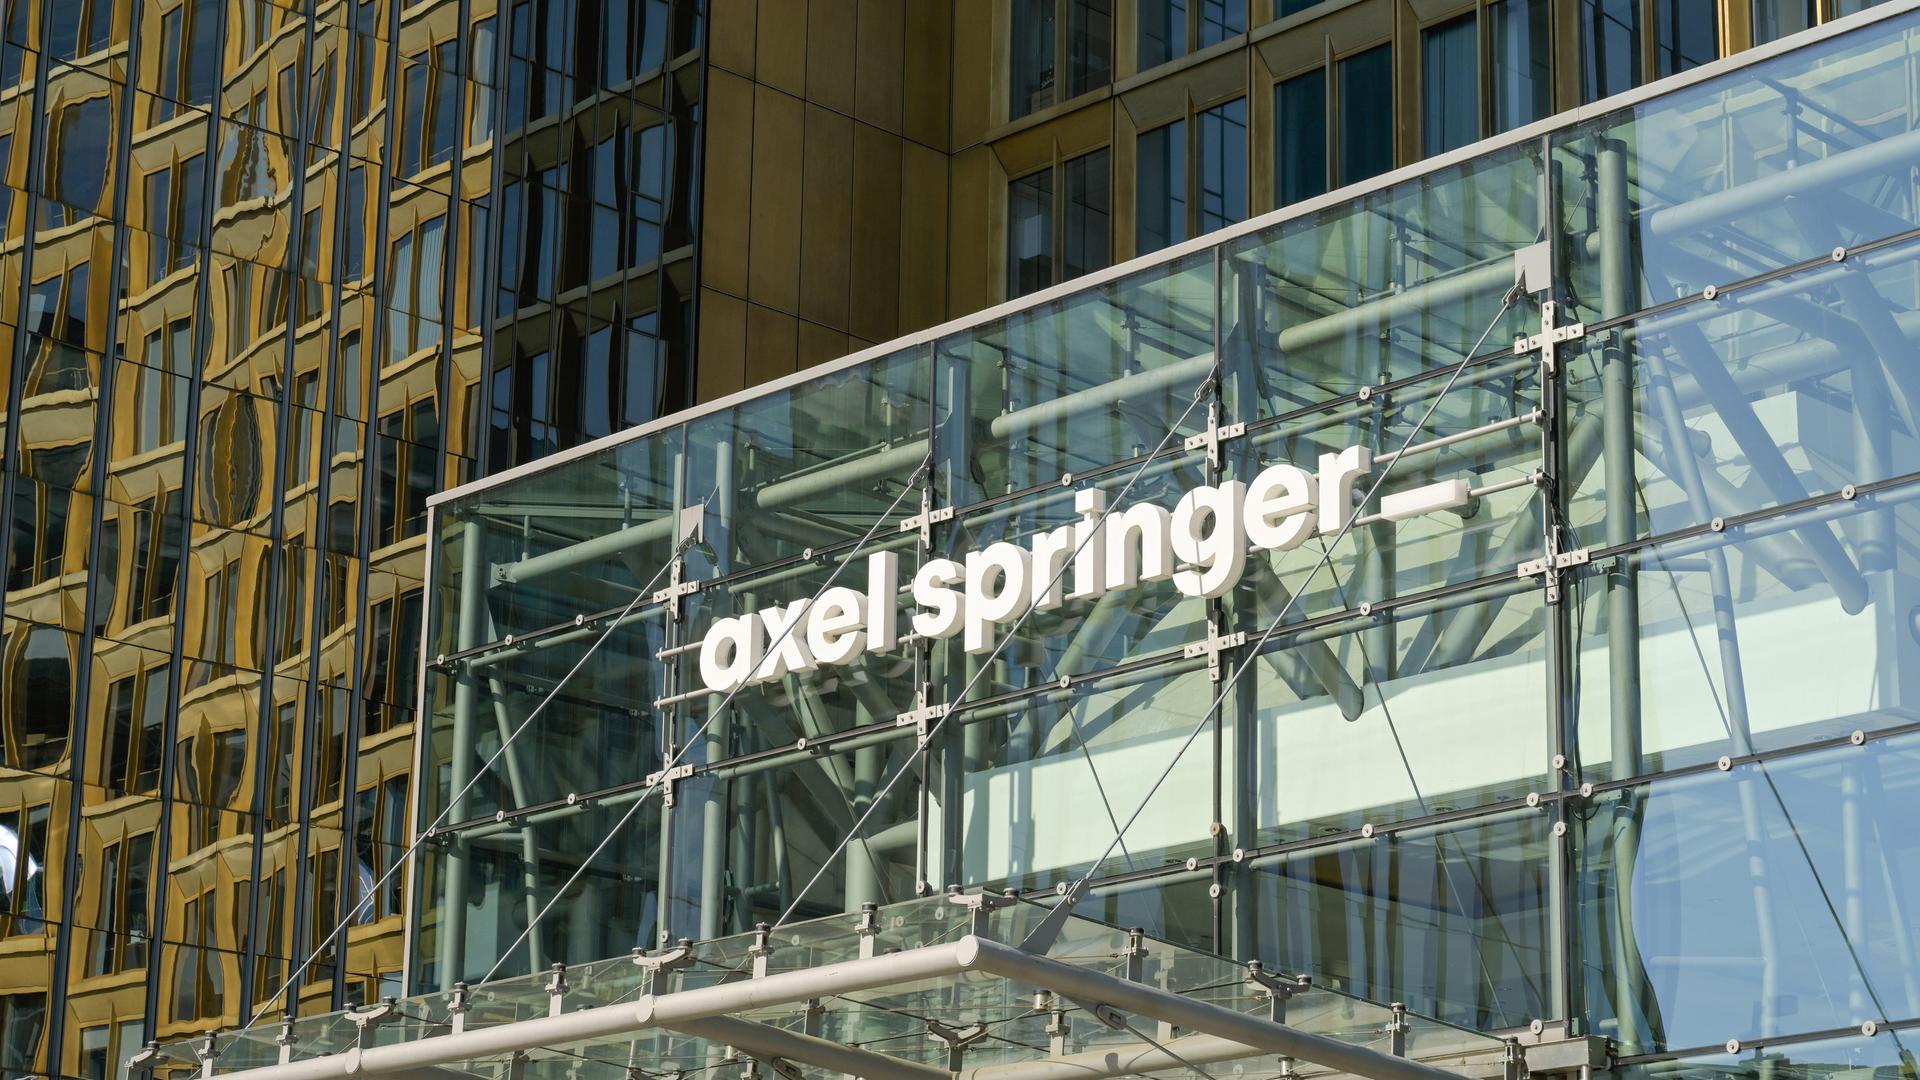 Die Glasfassade des Axel Springer Verlagsgebäudes in Berlin.